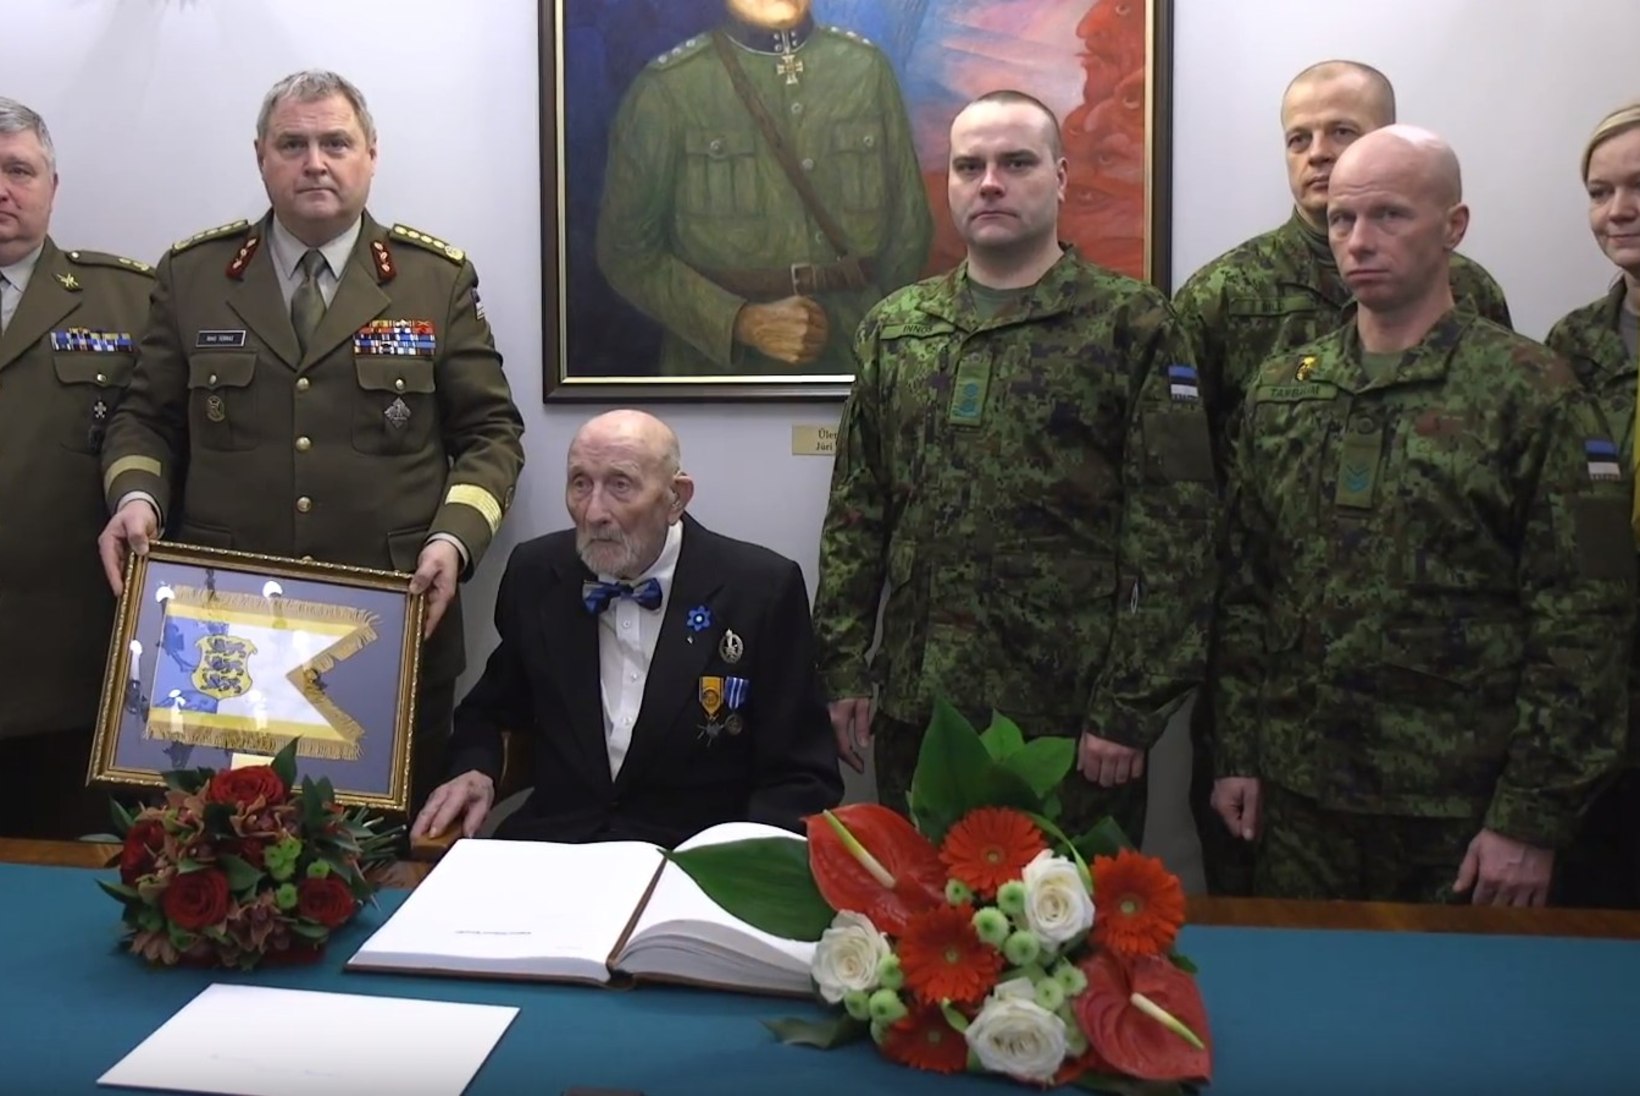 FOTO | Kindral Terras õnnitles Raua tänava lahingu veterani 100. sünnipäeva puhul